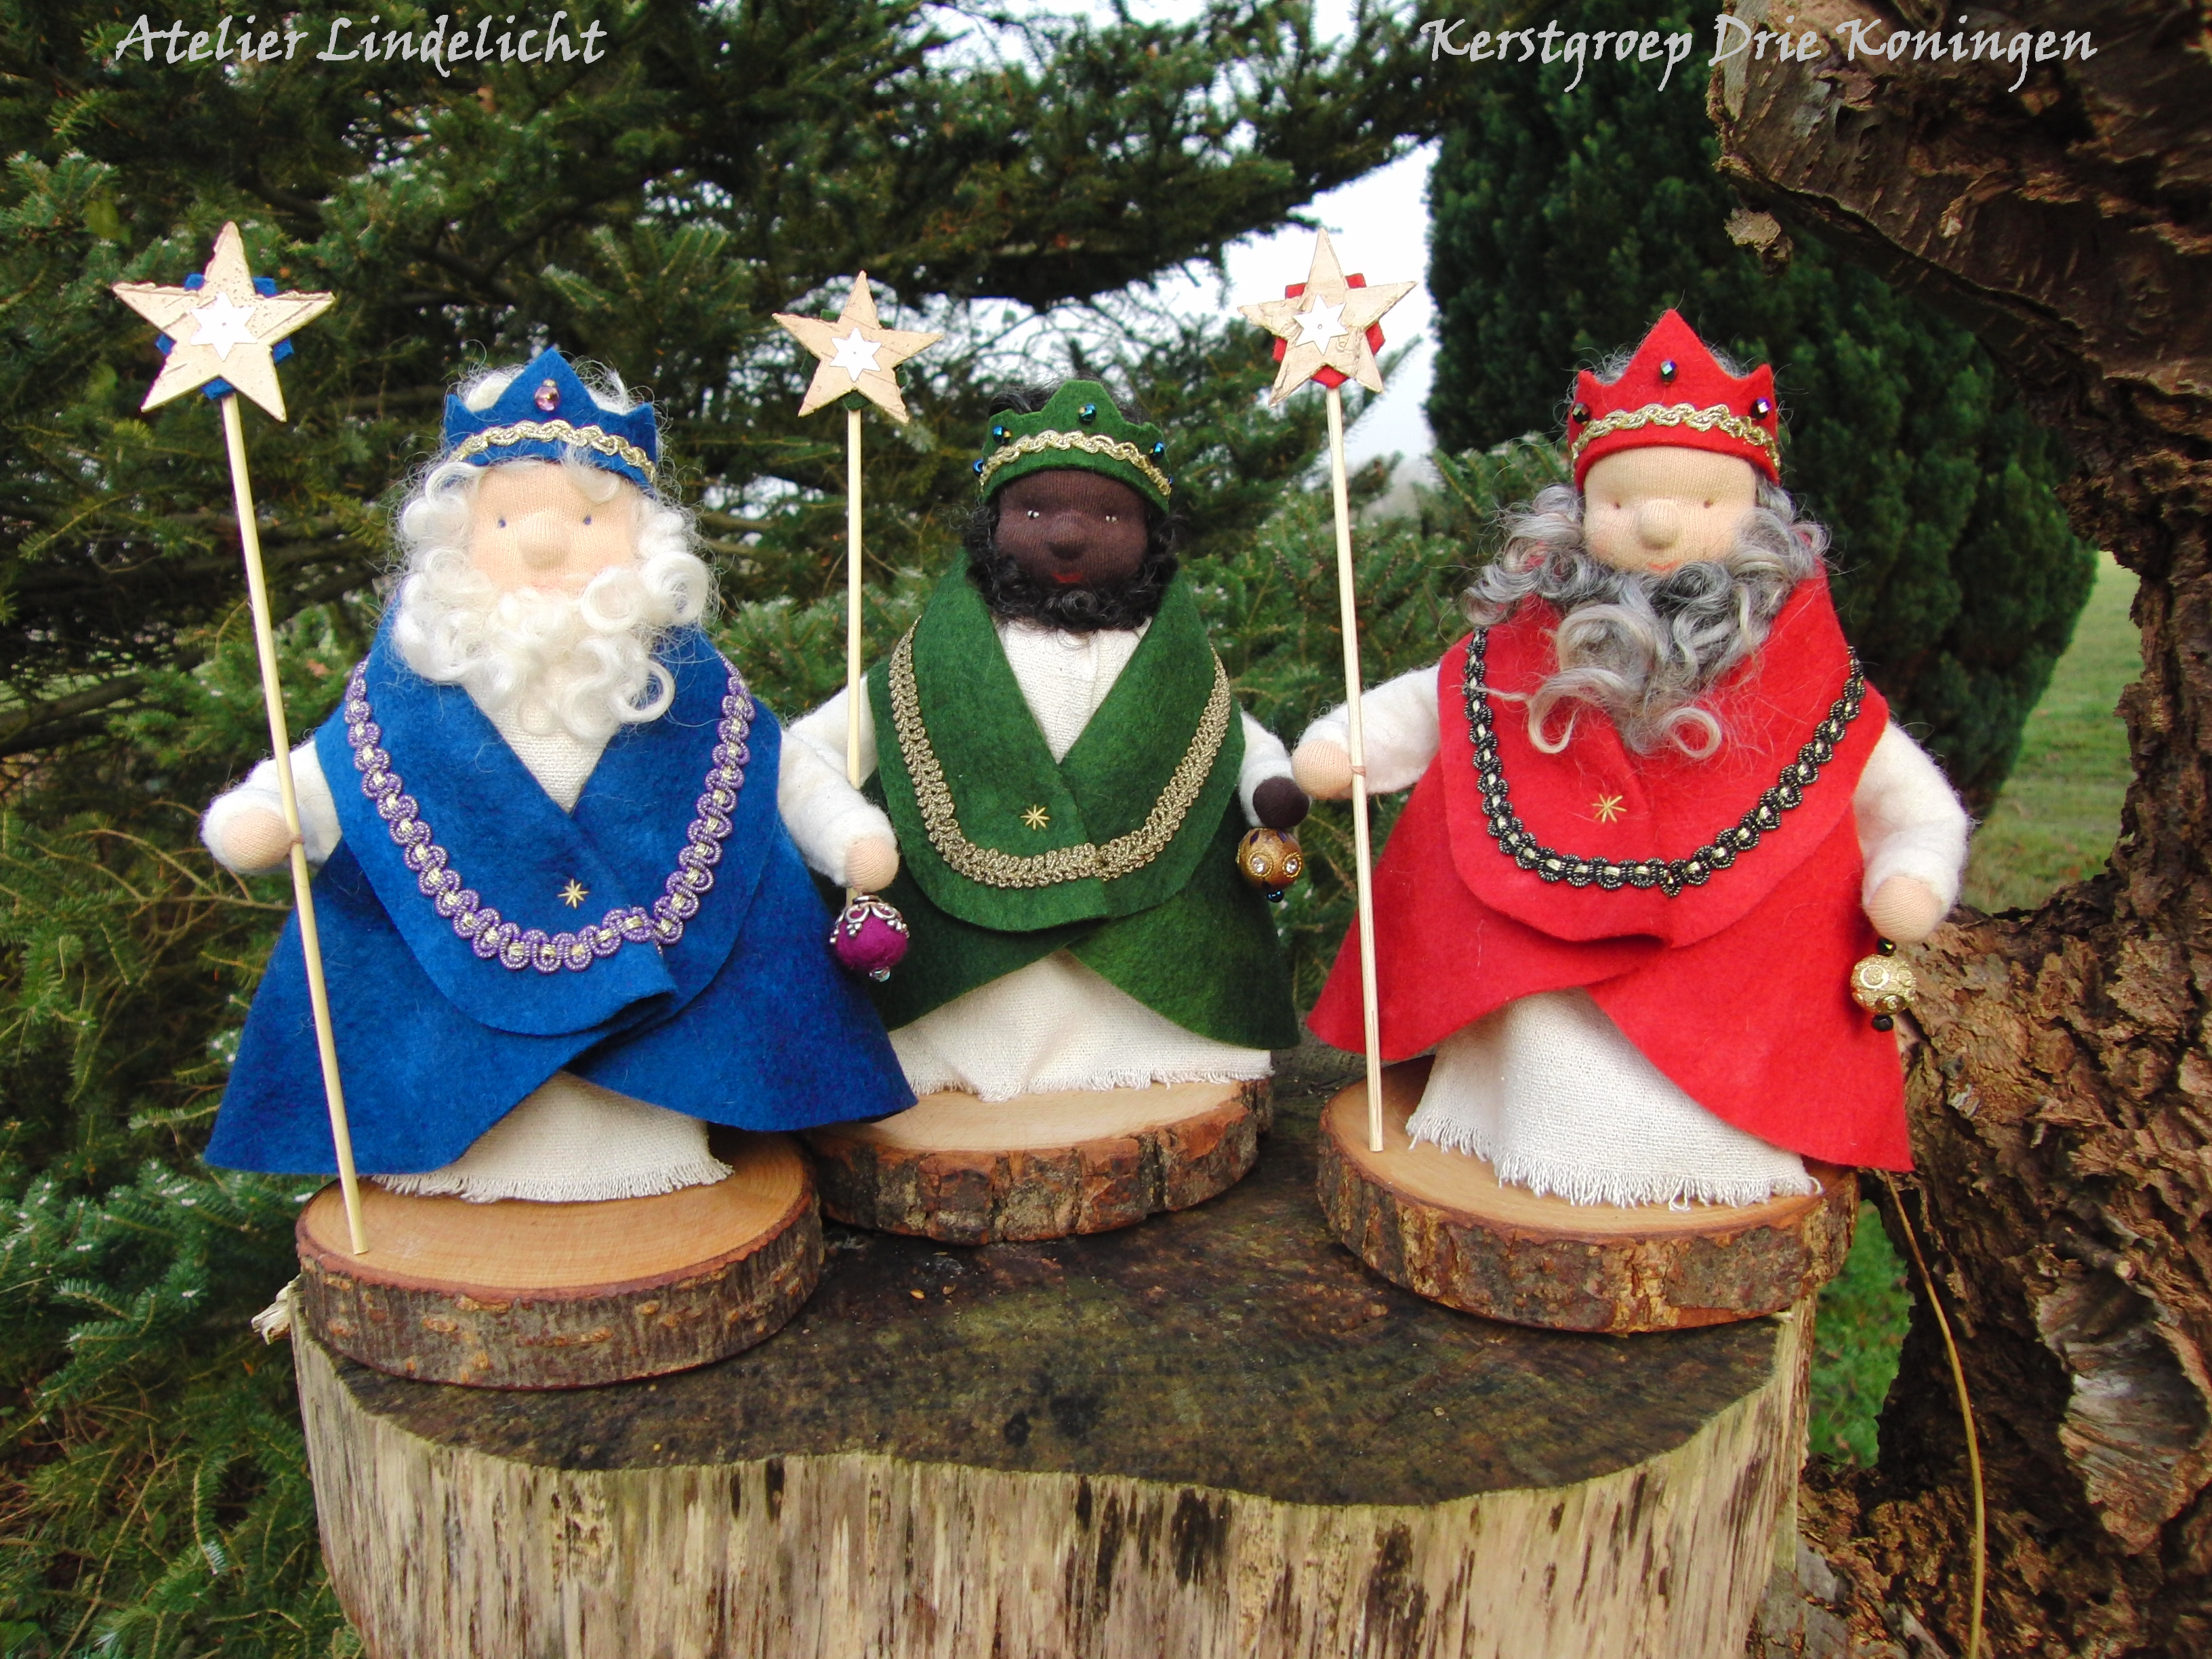 Kerstgroep: Drie Koningen pakket